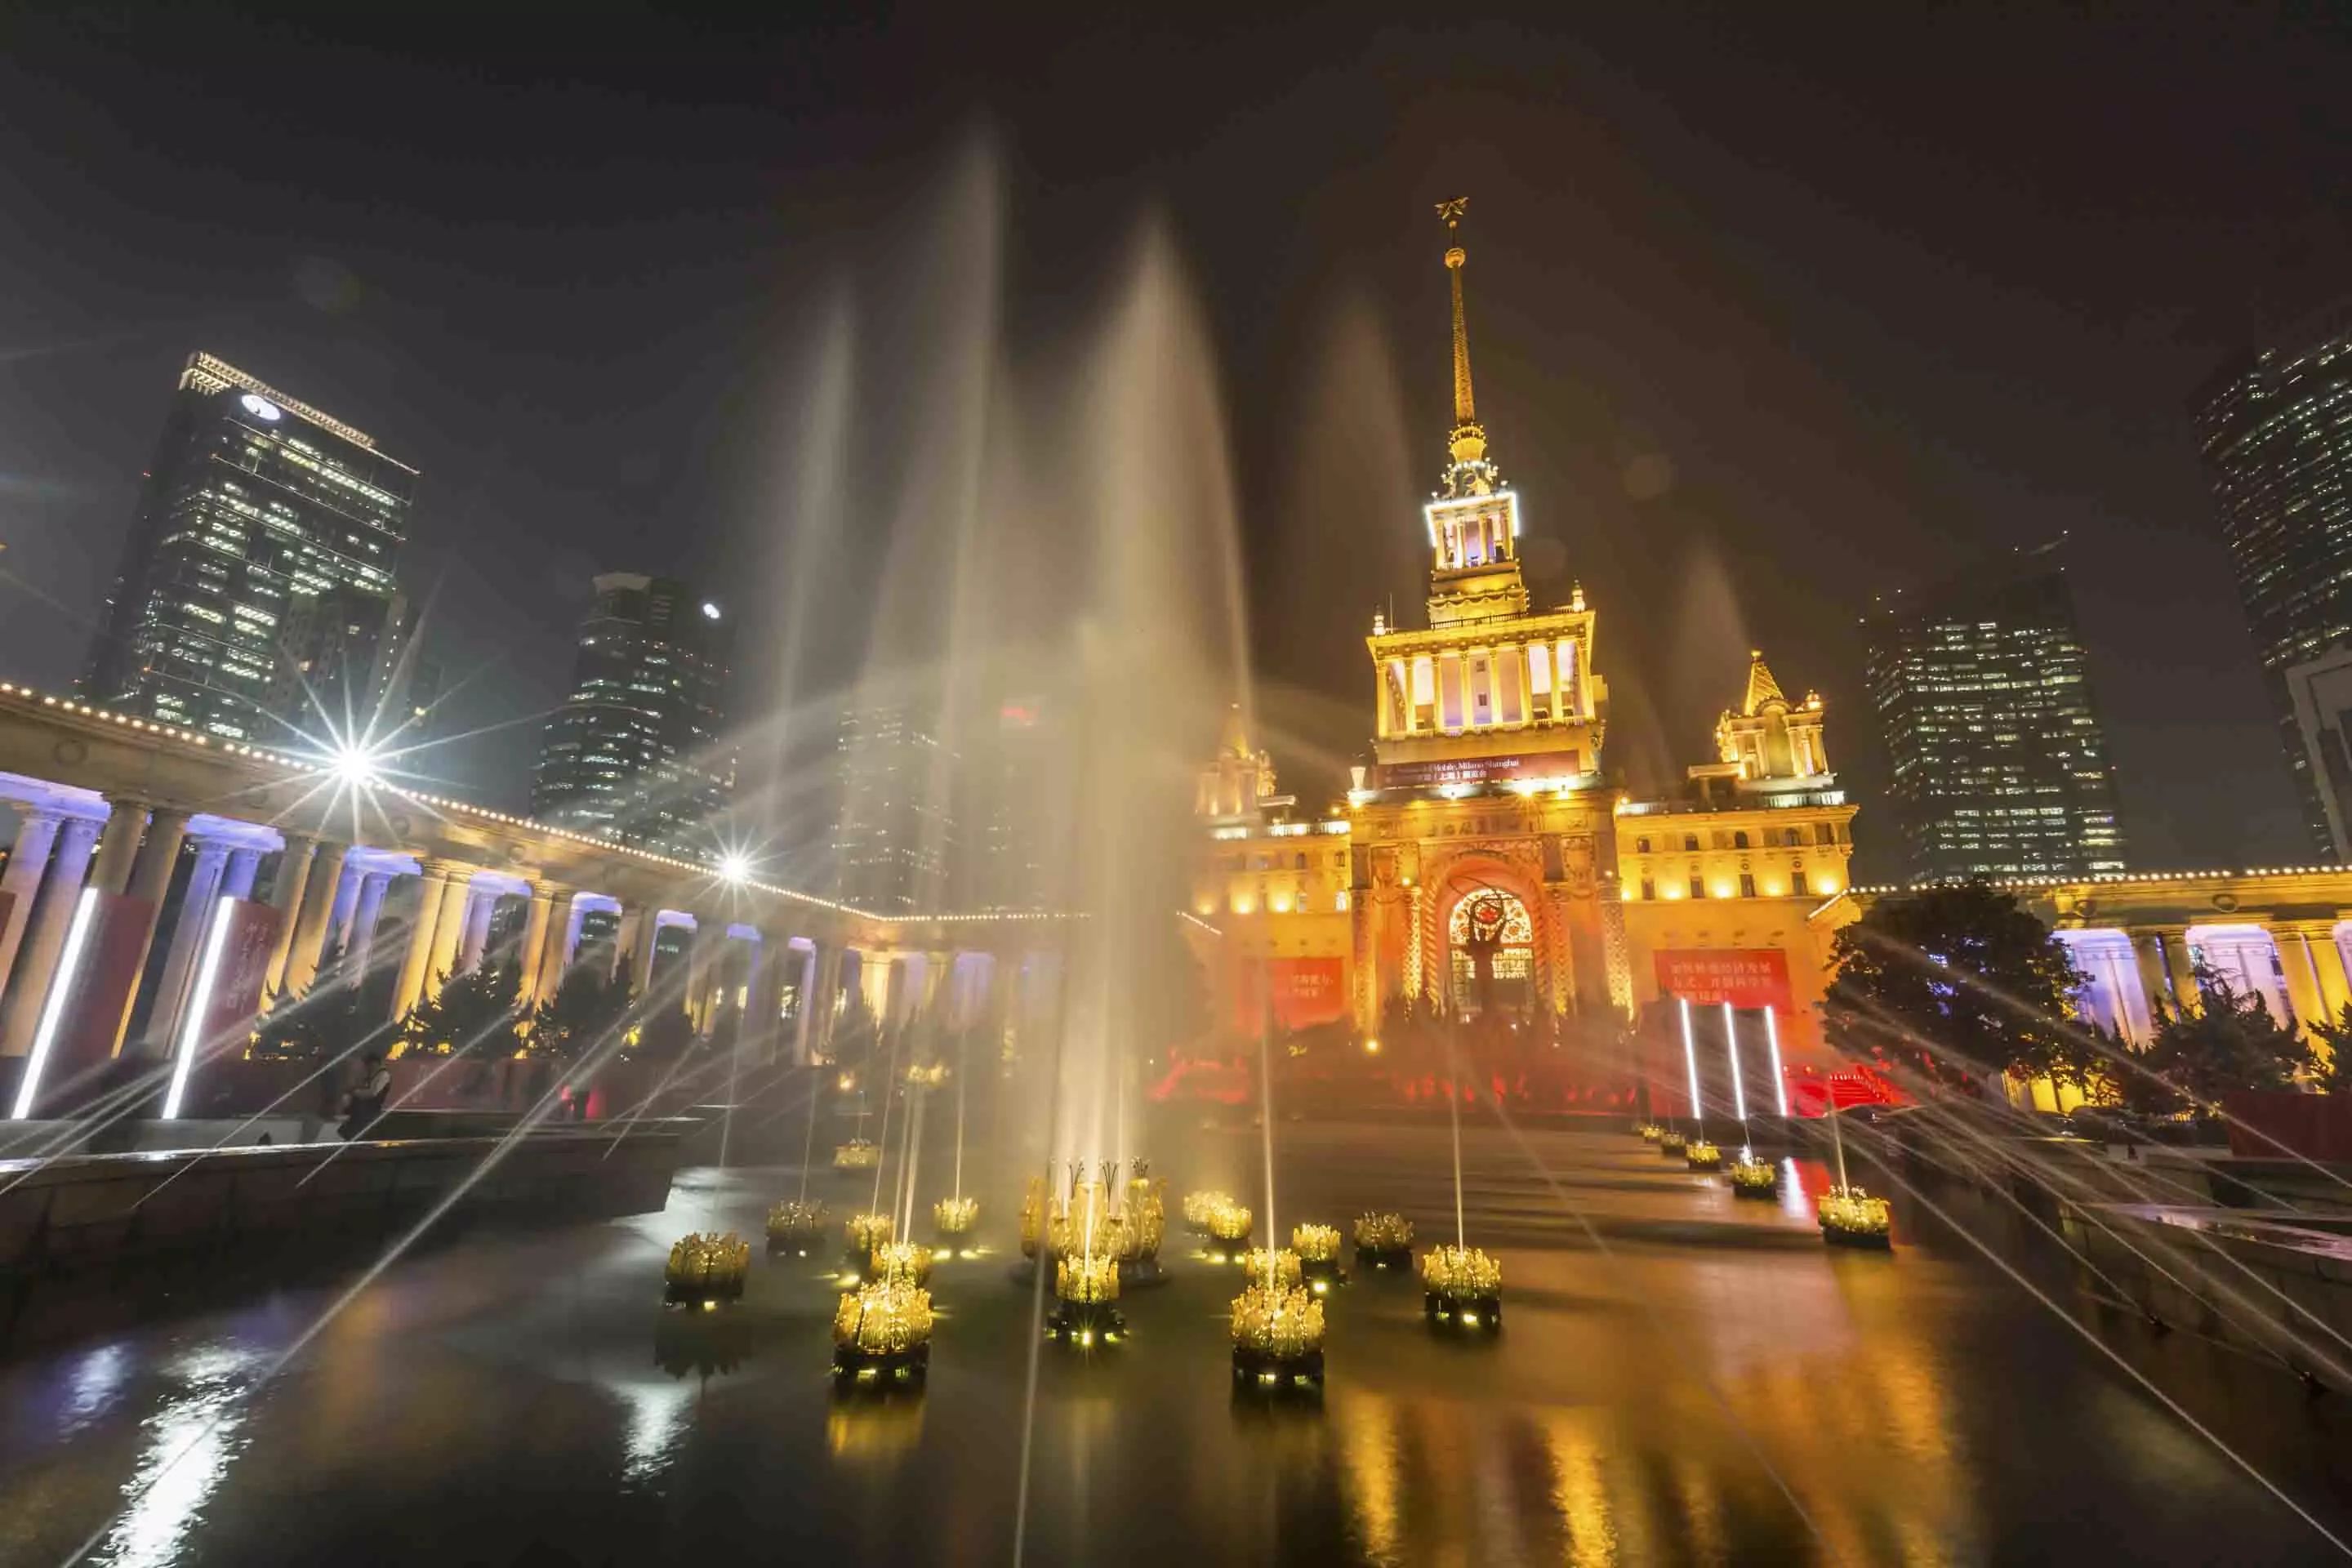 上海展览馆夜景图片